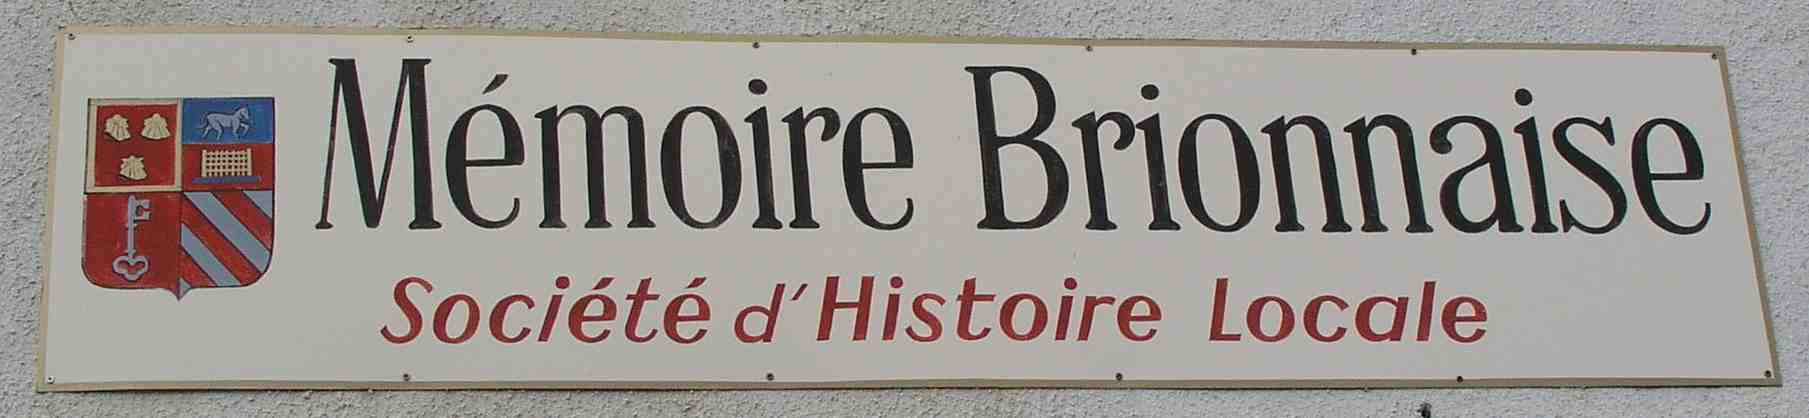 Siège de Mémoire Brionnaise à St-Christophe-en-Brionnais